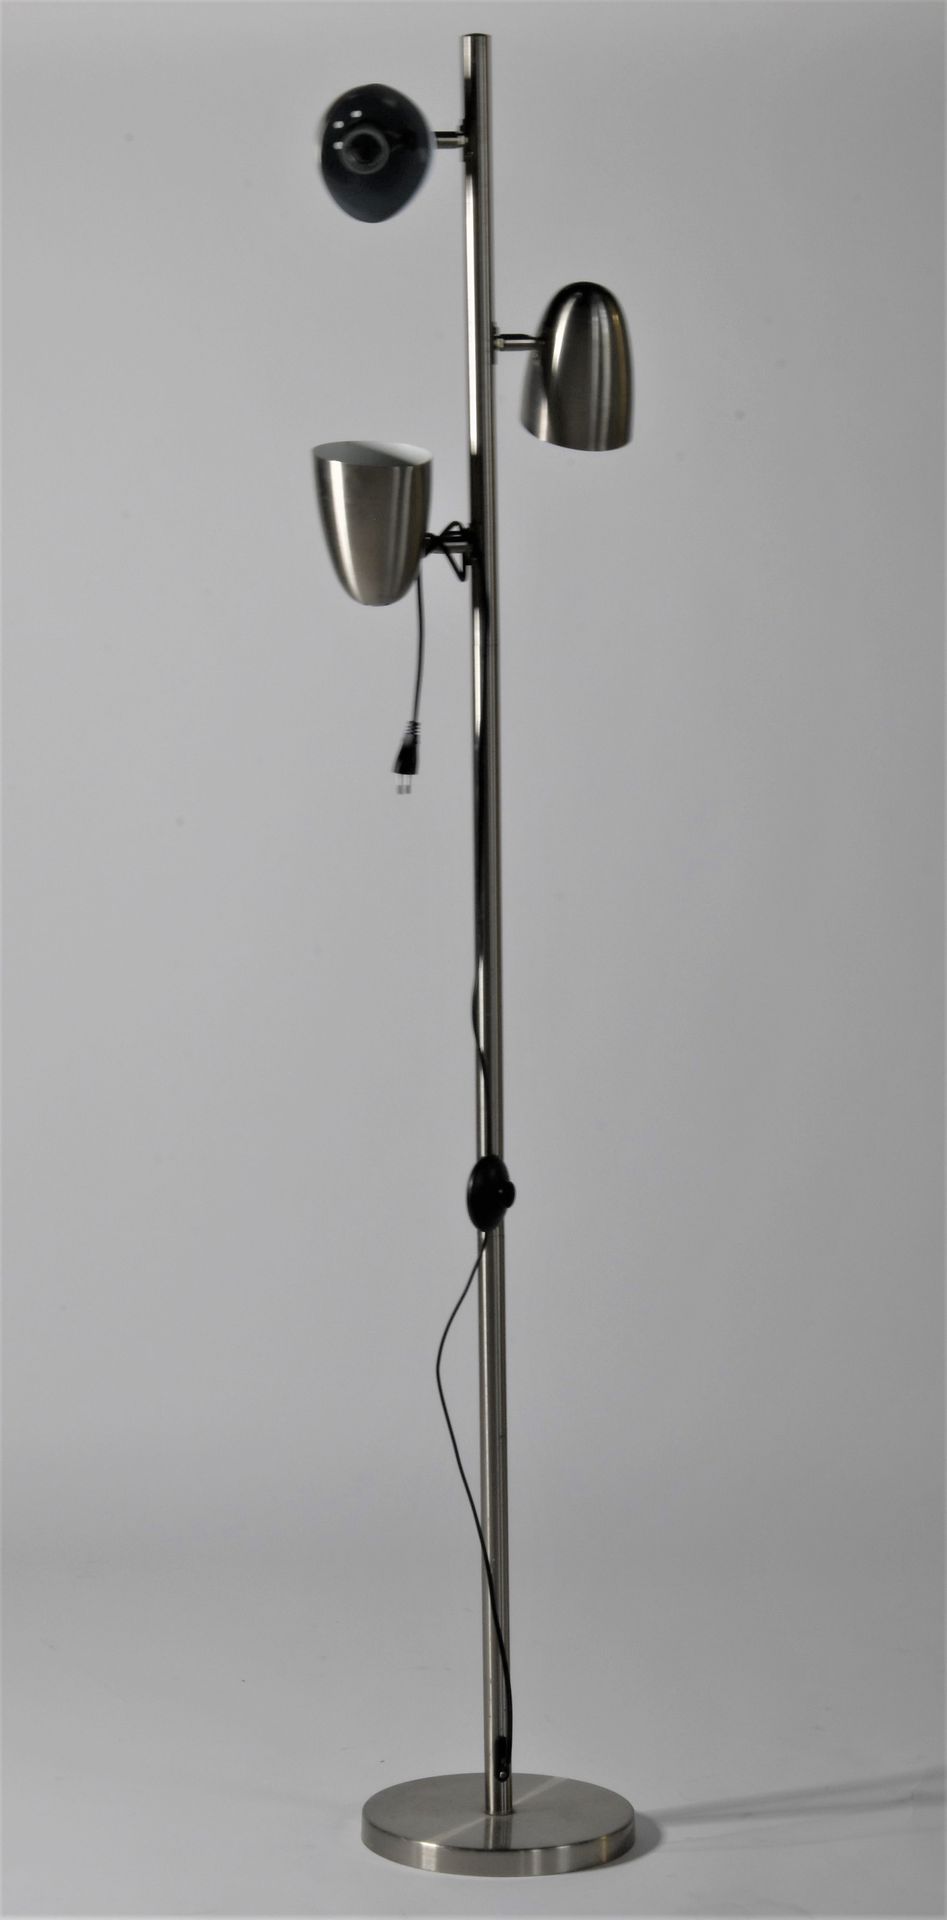 Null Lámpara de pie en metal cromado, con tres puntos ojivales. 

H: 162 cm